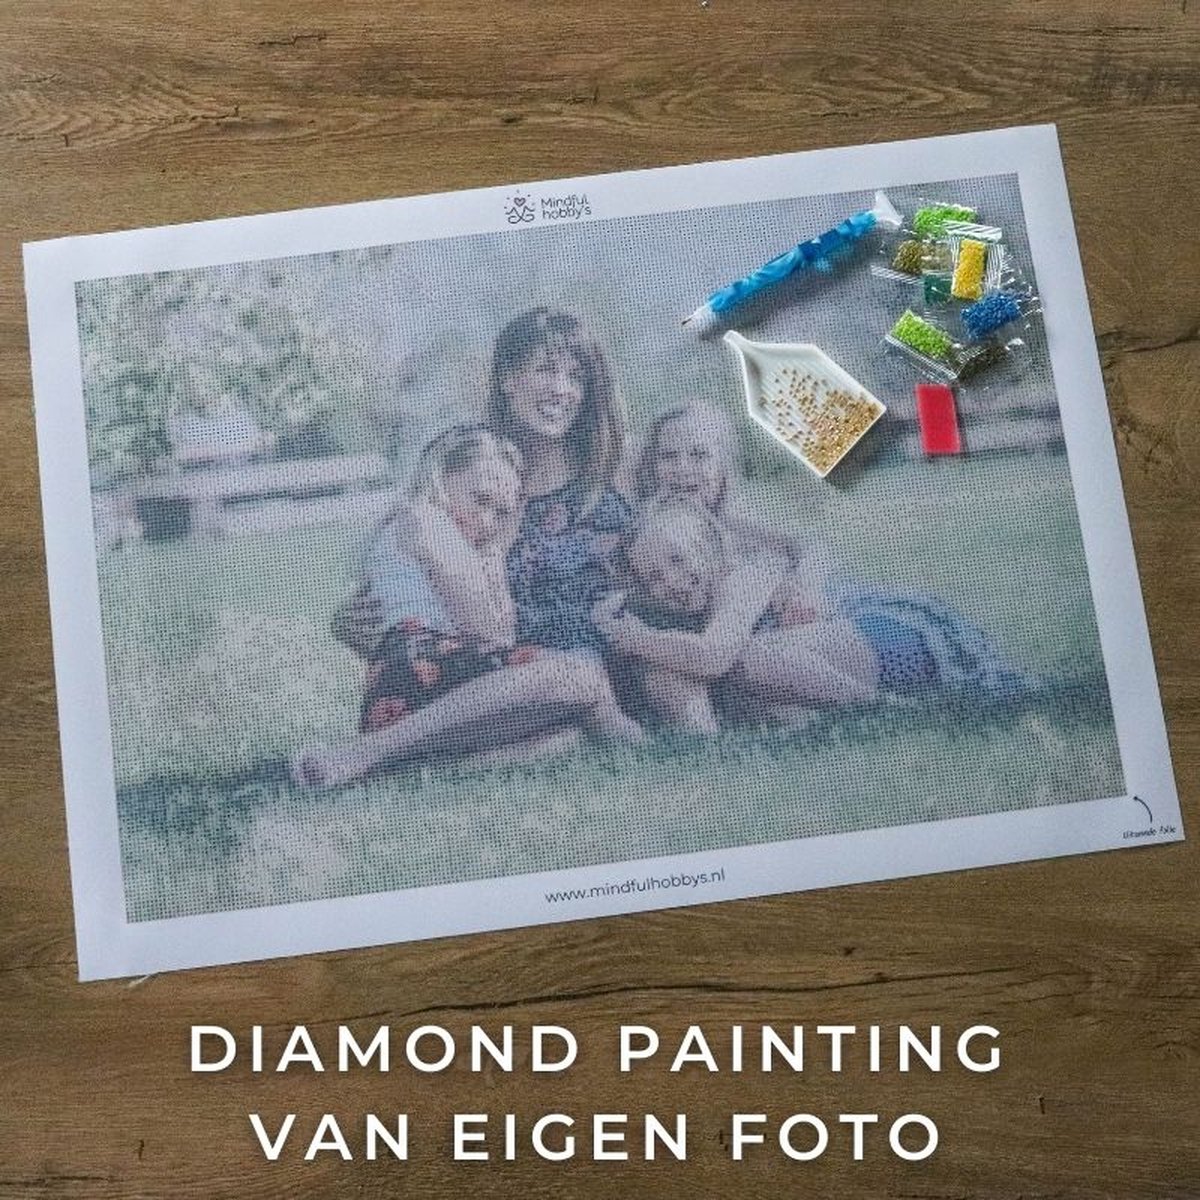 Diamond painting eigen foto - Geproduceerd in Nederland - 20 x 30 cm - canvas materiaal - vierkante steentjes - Binnen 2-3 werkdagen in huis